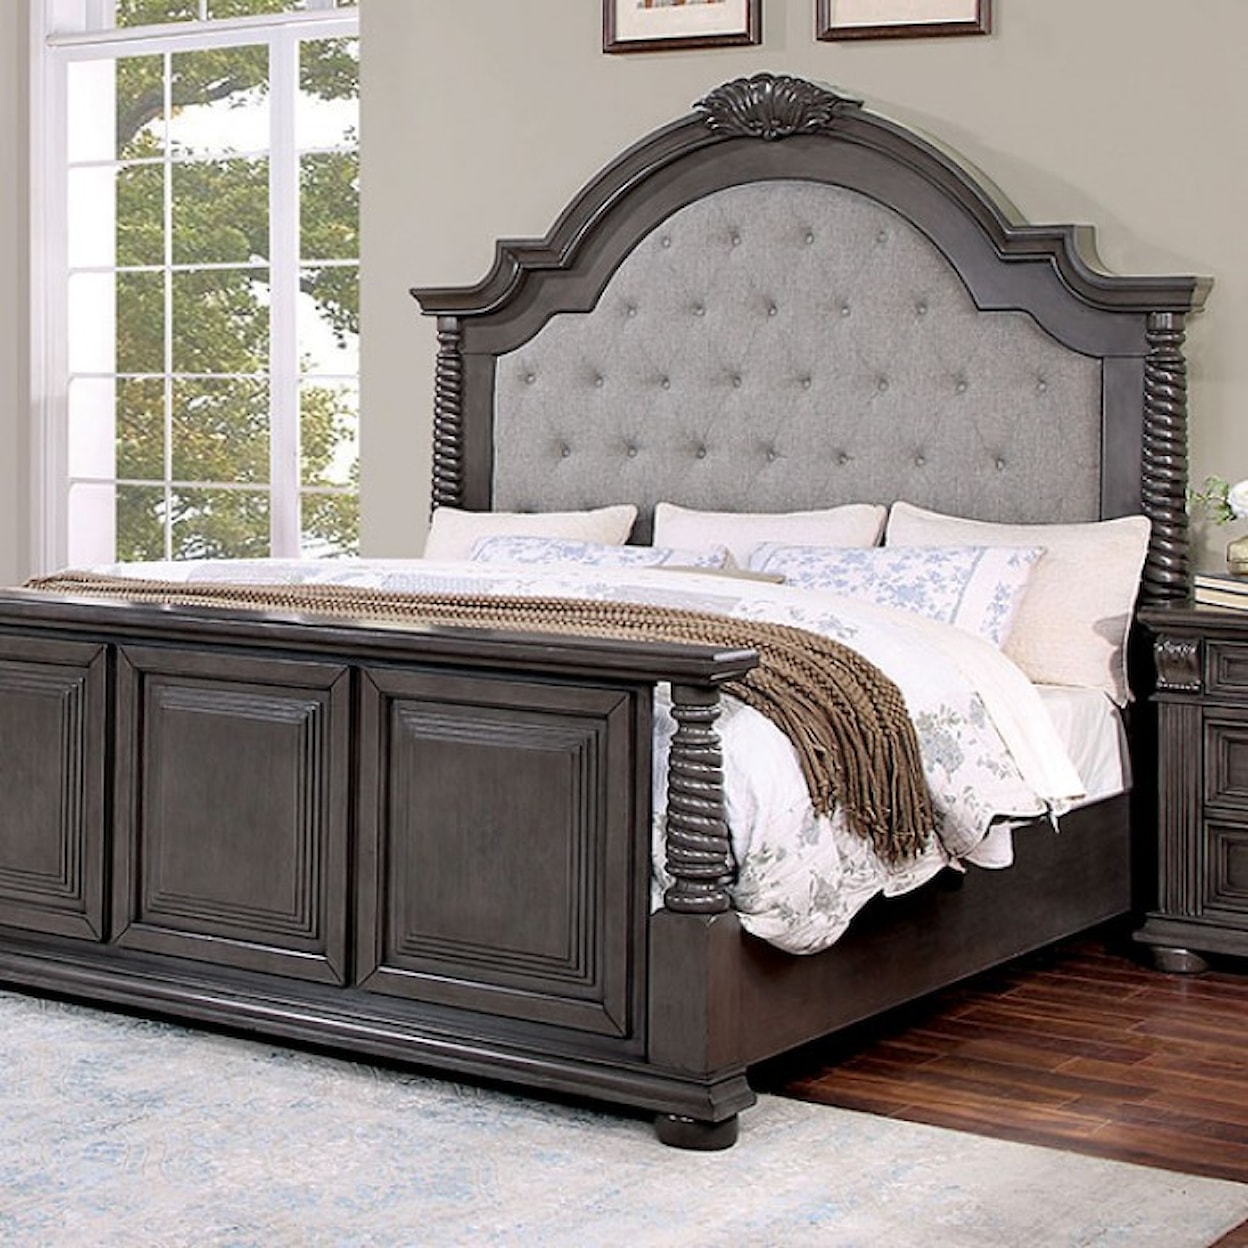 Furniture of America Esperia California King Bed